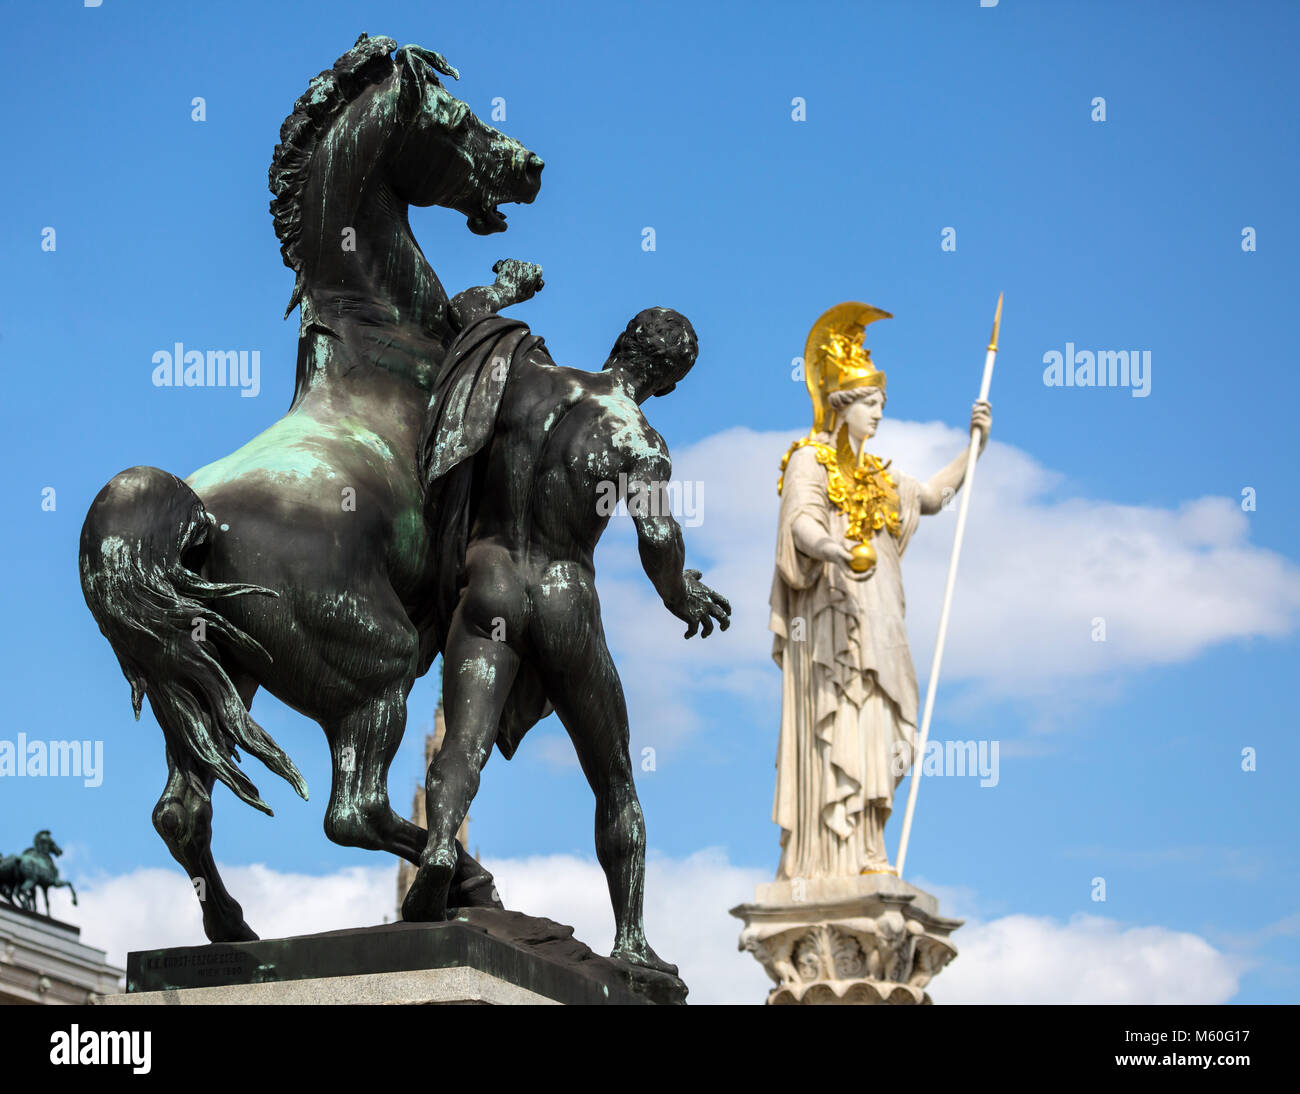 Das Pferd tamer und Pallas Athene Skulpturen außerhalb des Österreichischen Parlaments Gebäude, Ringstraße, Wien, Österreich. Stockfoto